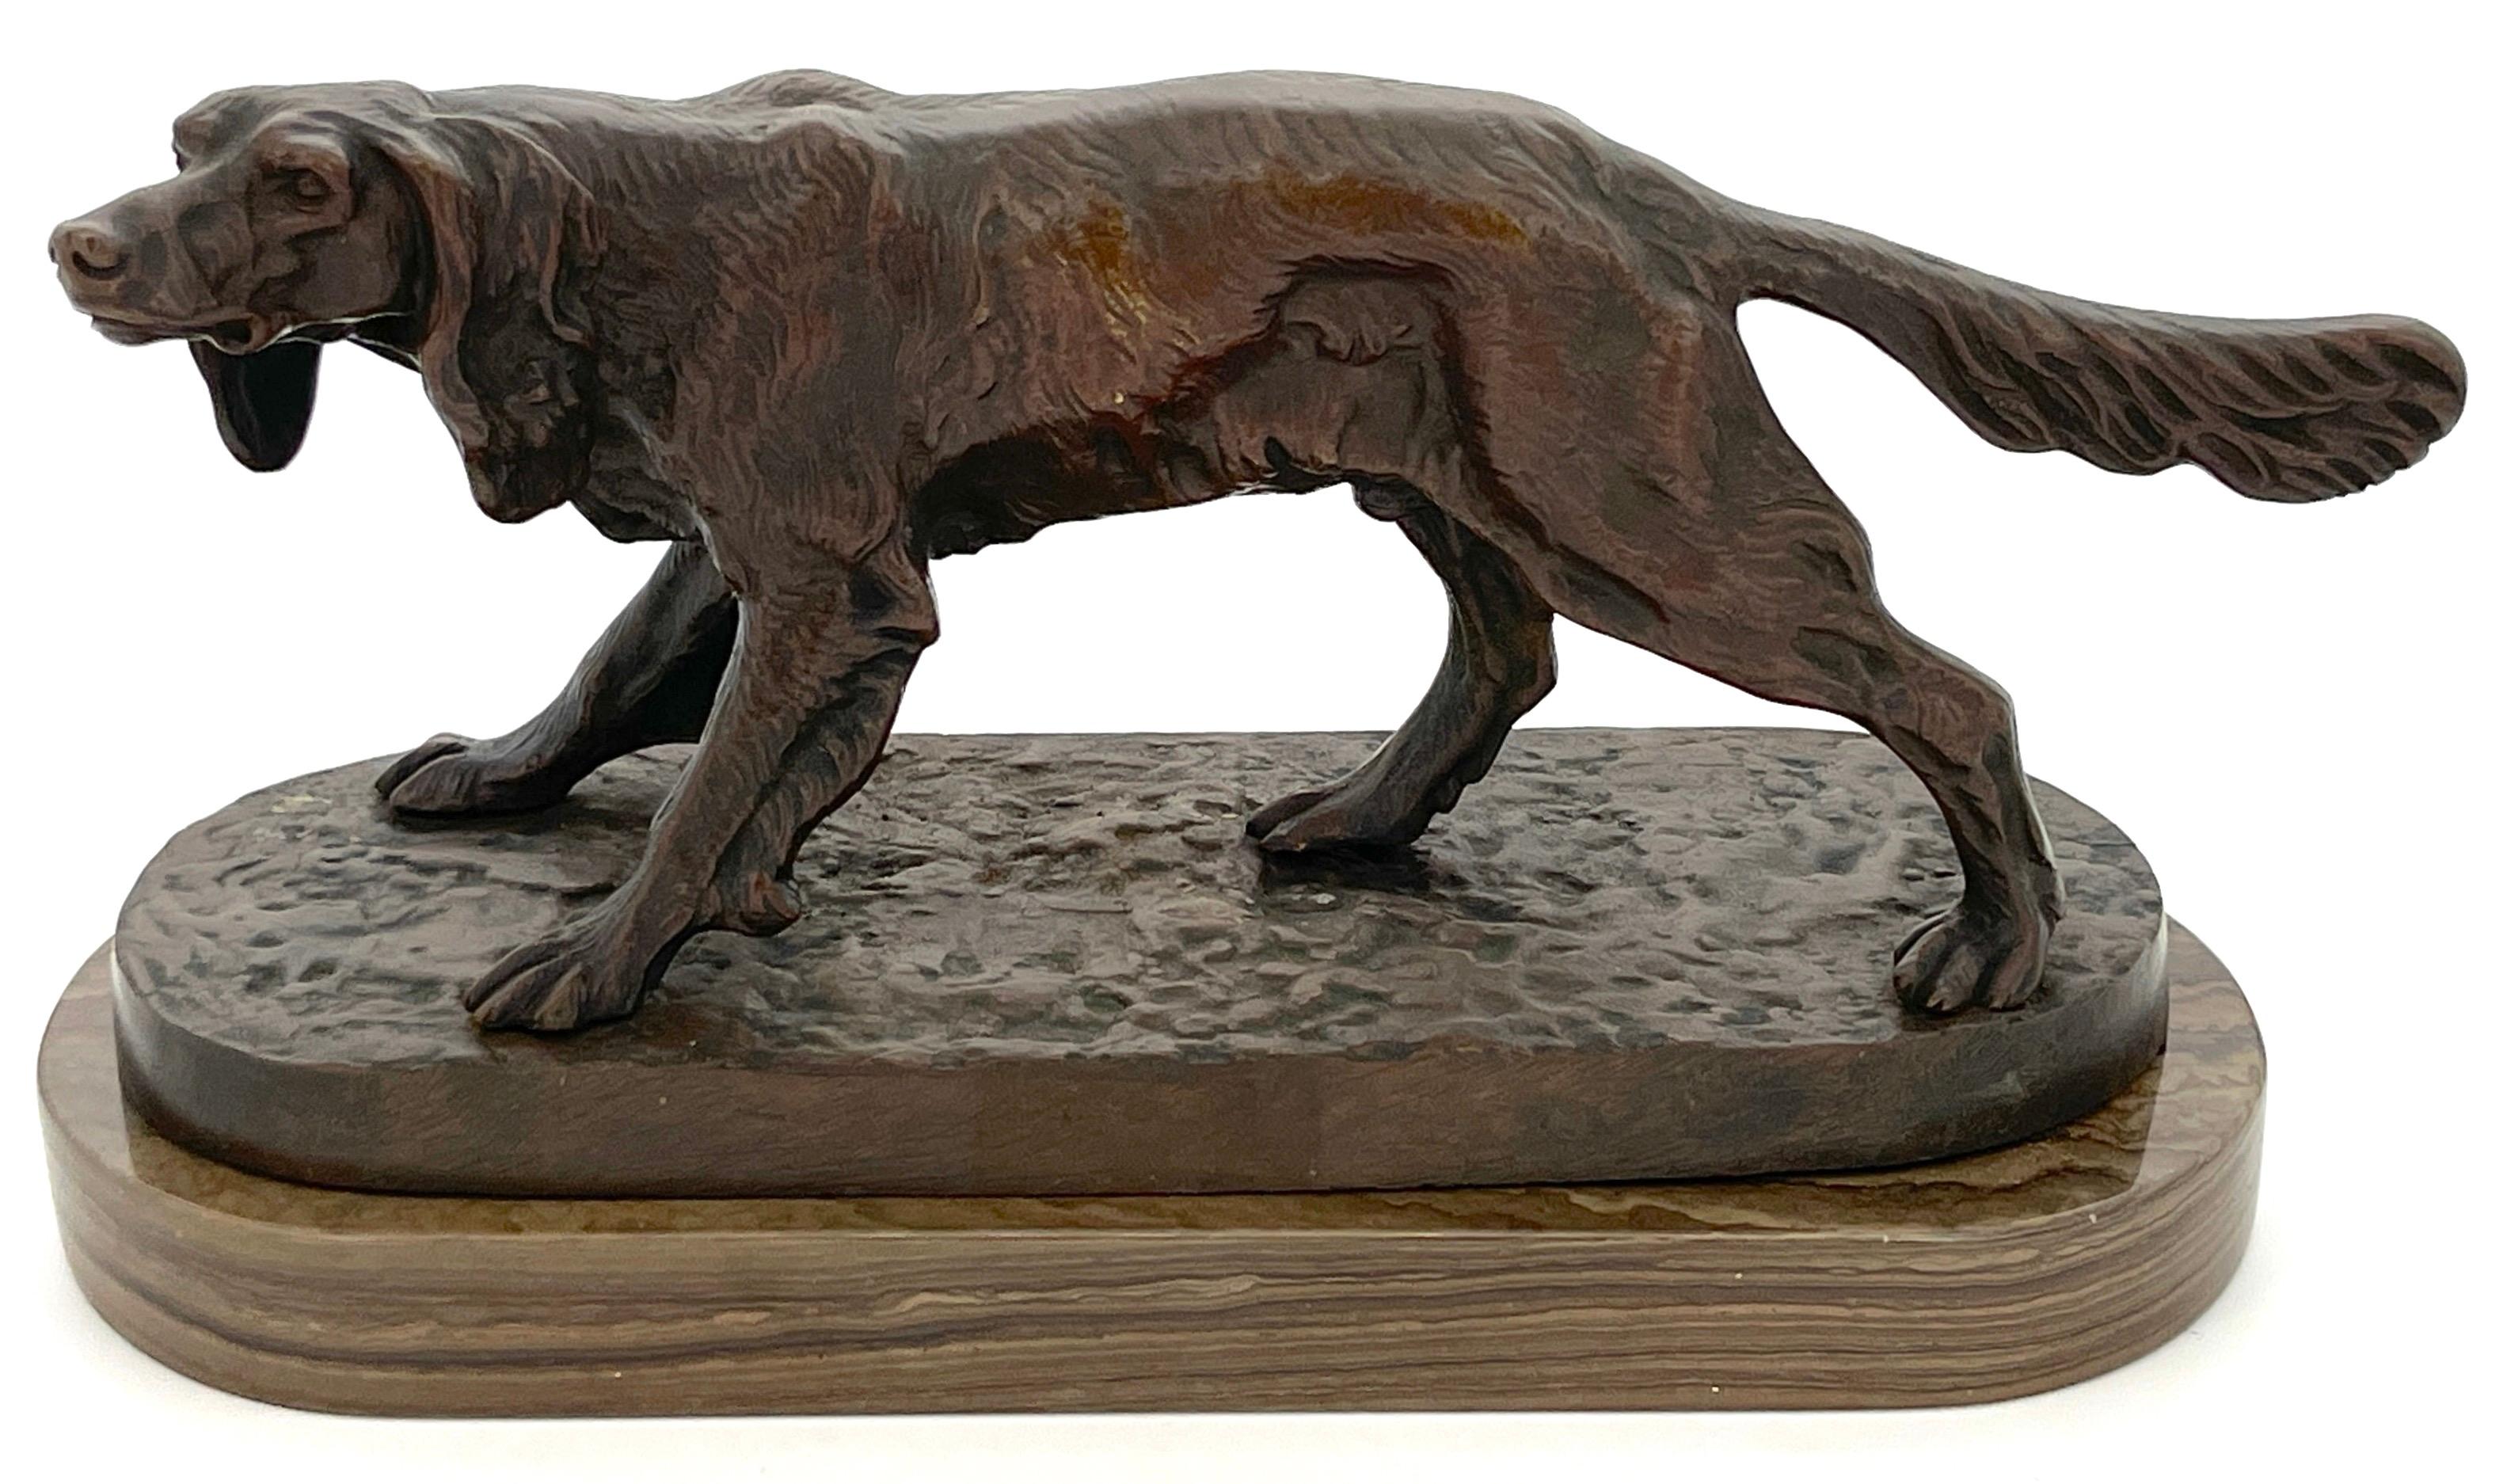 19. Jahrhundert Französische Bronze eines Jagdhundes im Landschaftsstil von  PJ Mene
Frankreich, circa 1880

Ein schönes Beispiel des späten 19. Jahrhunderts der Sportkunst mit dieser bemerkenswerten französischen Bronze eines Jagdhundes im Stil von